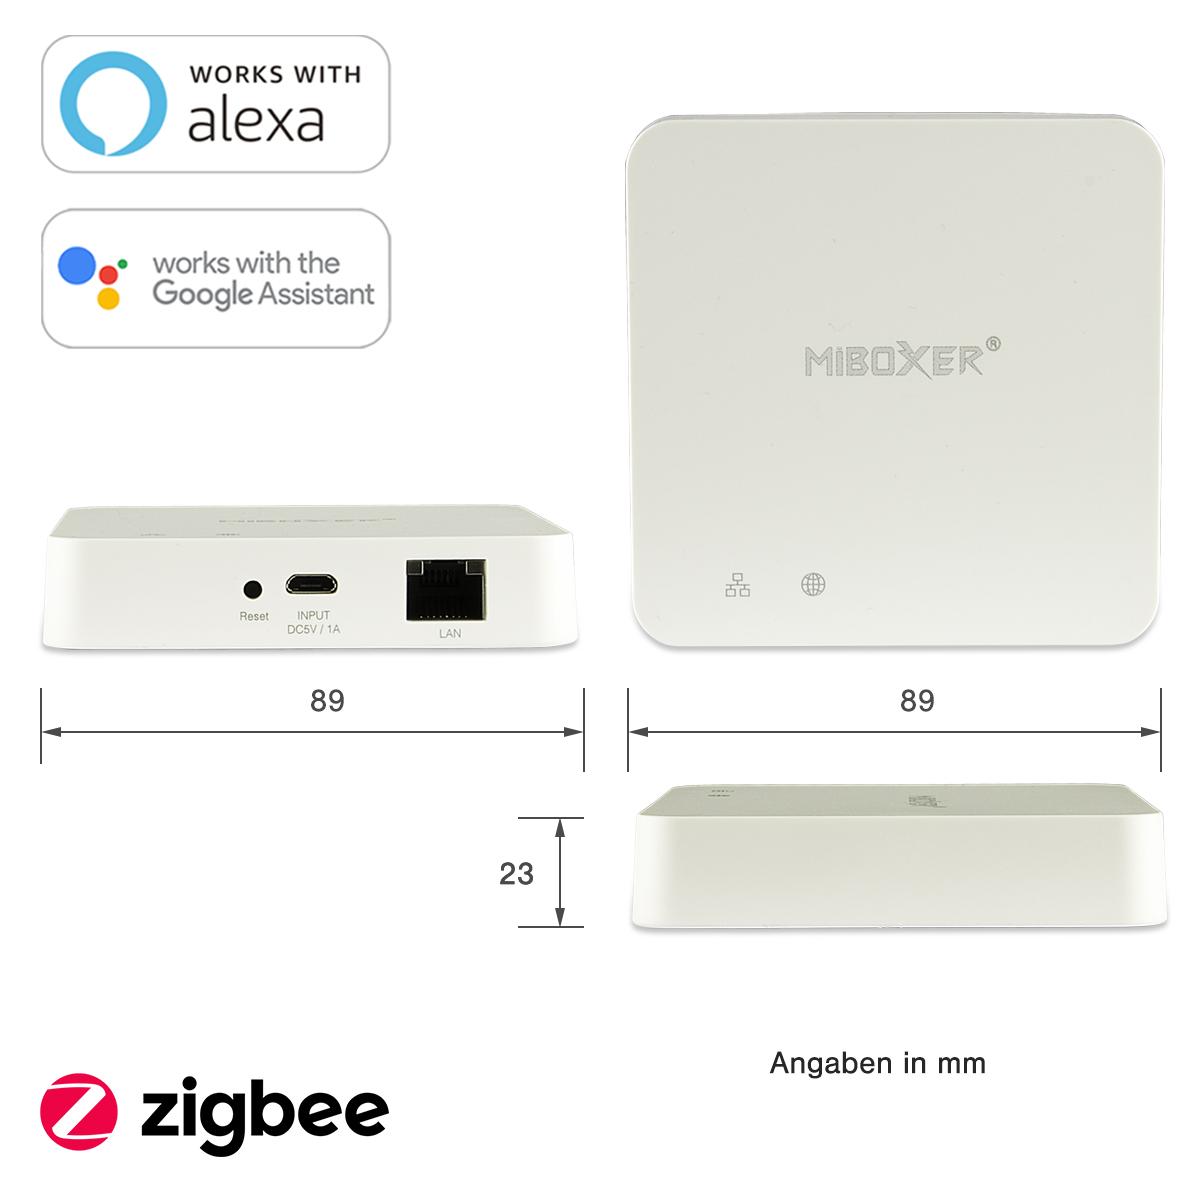 MiBoxer Zigbee 3.0 Wired Gateway / Hub / Bridge ZBBOX2